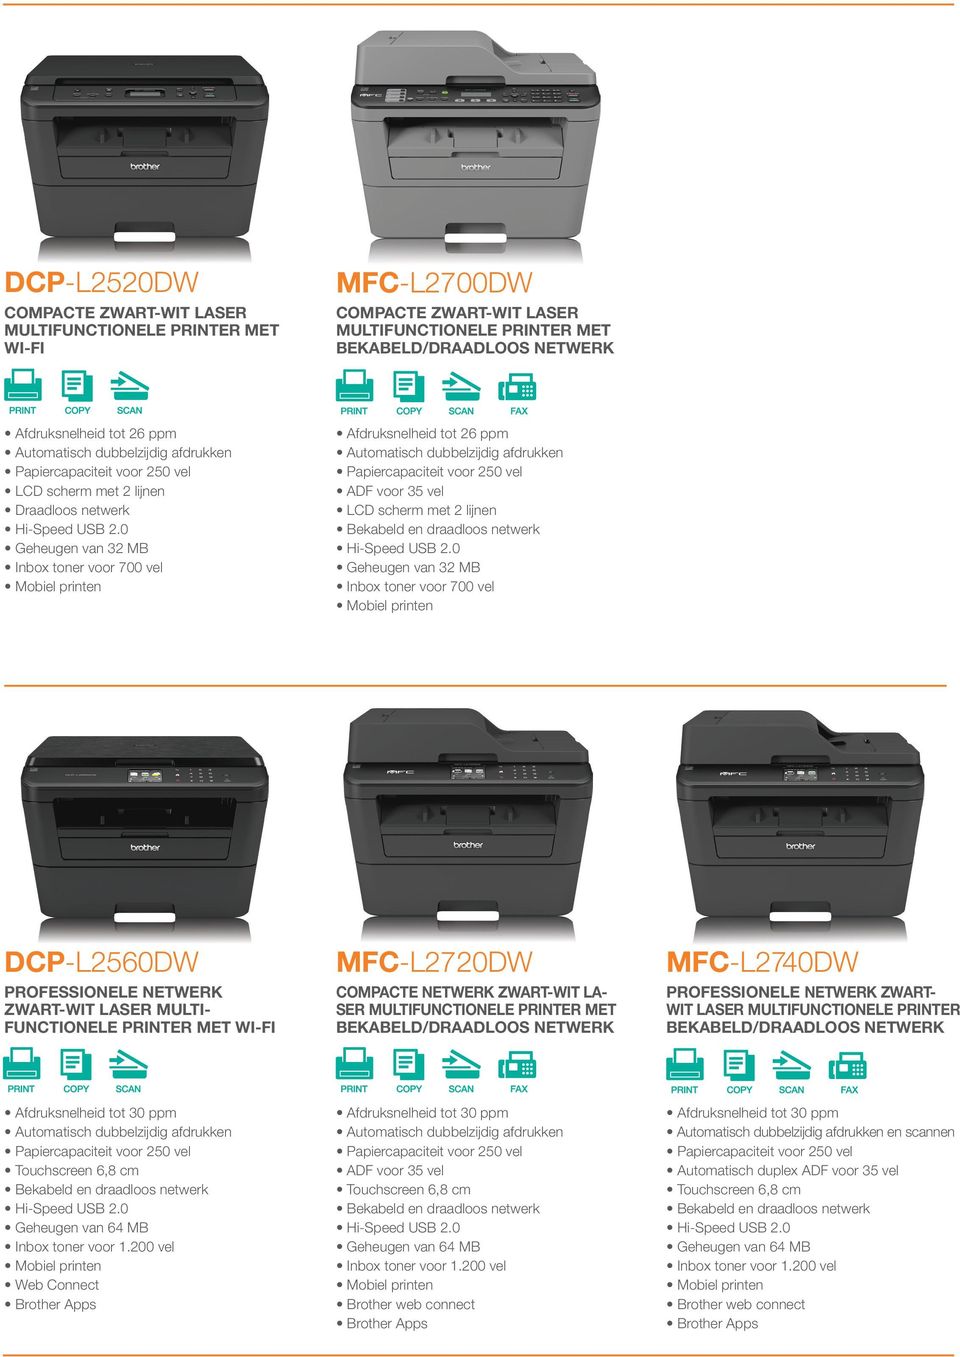 MFC-L2740DW ProfeionELE NetwERK ZWART- WIT laer MULTIFUNCTIONELE printer Touchcreen 6,8 cm Geheugen van 64 MB Web Connect Brother App ADF voor 35 vel Touchcreen 6,8